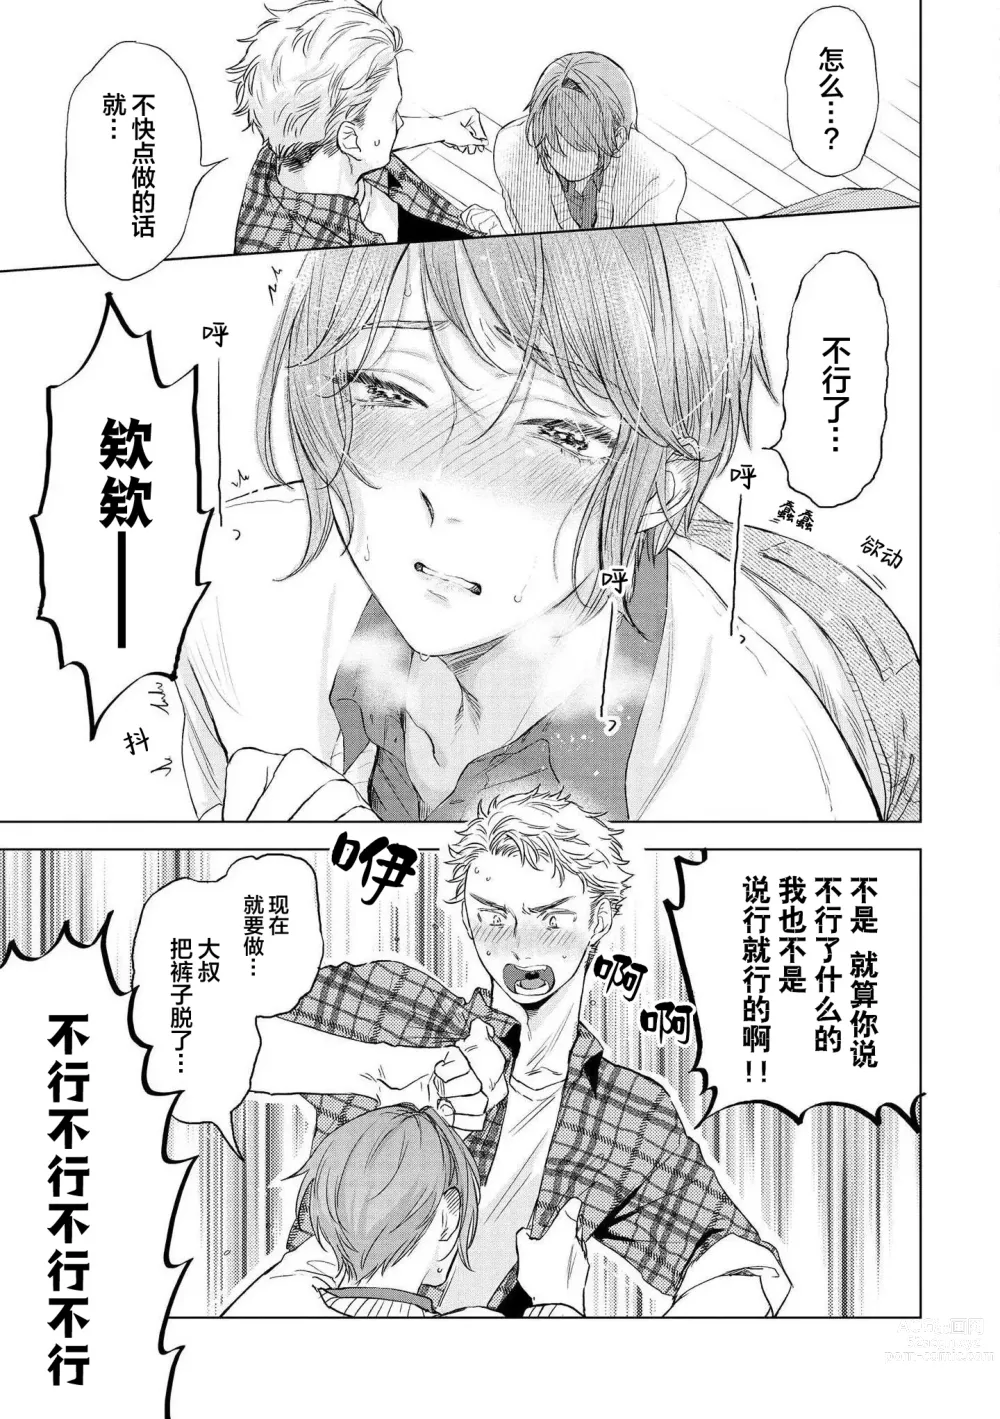 Page 61 of manga 小恶魔的草莓蛋糕